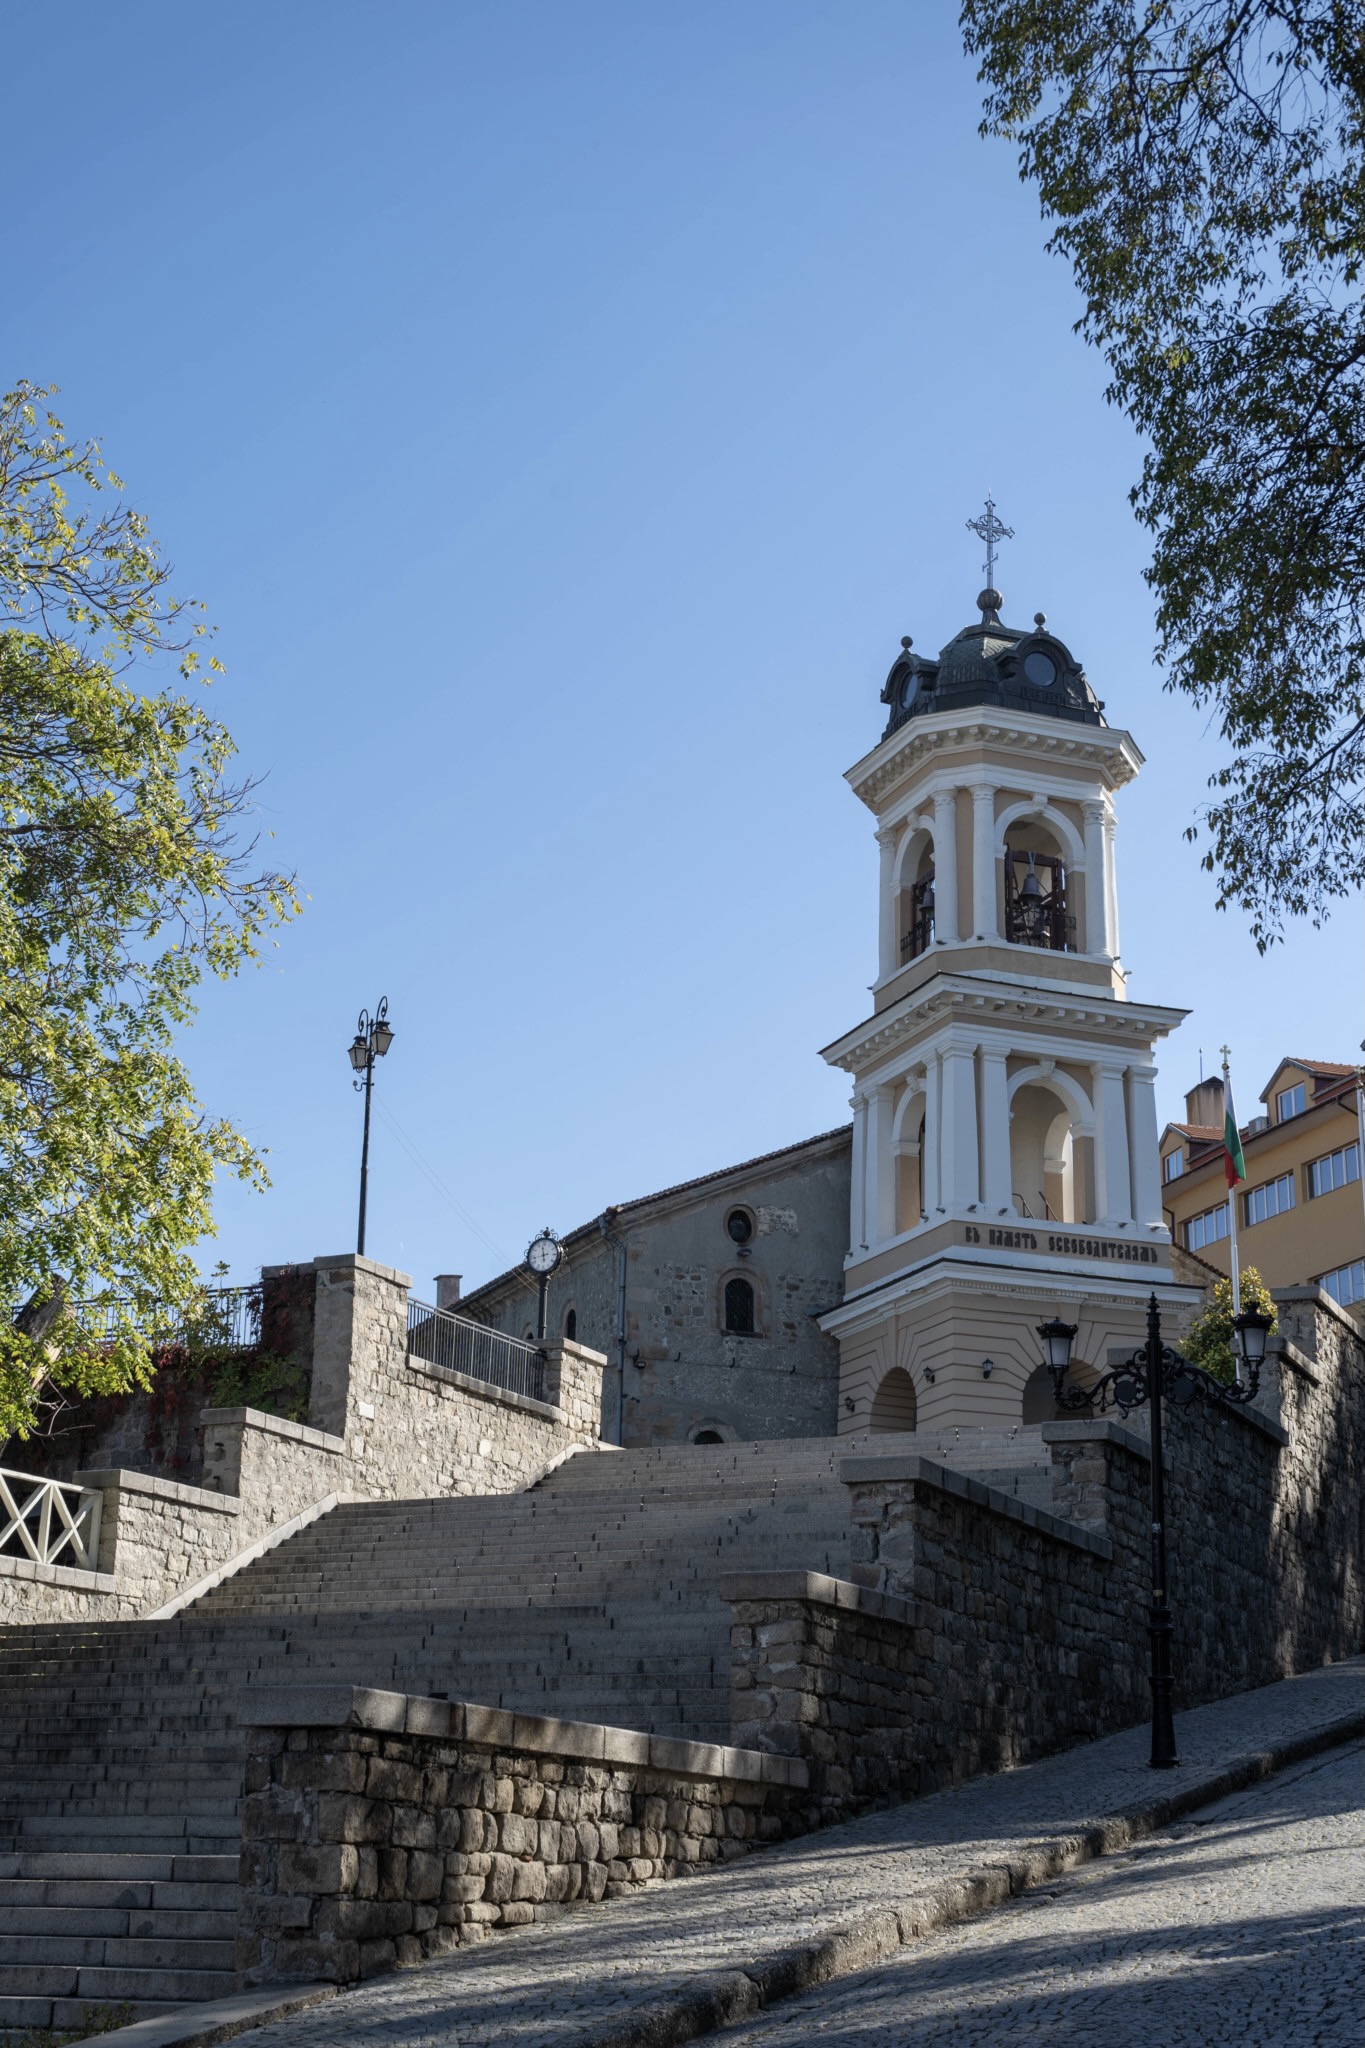 Ein Städtetrip in Europa nach Plovdiv führt einen zu schönen Kirchen